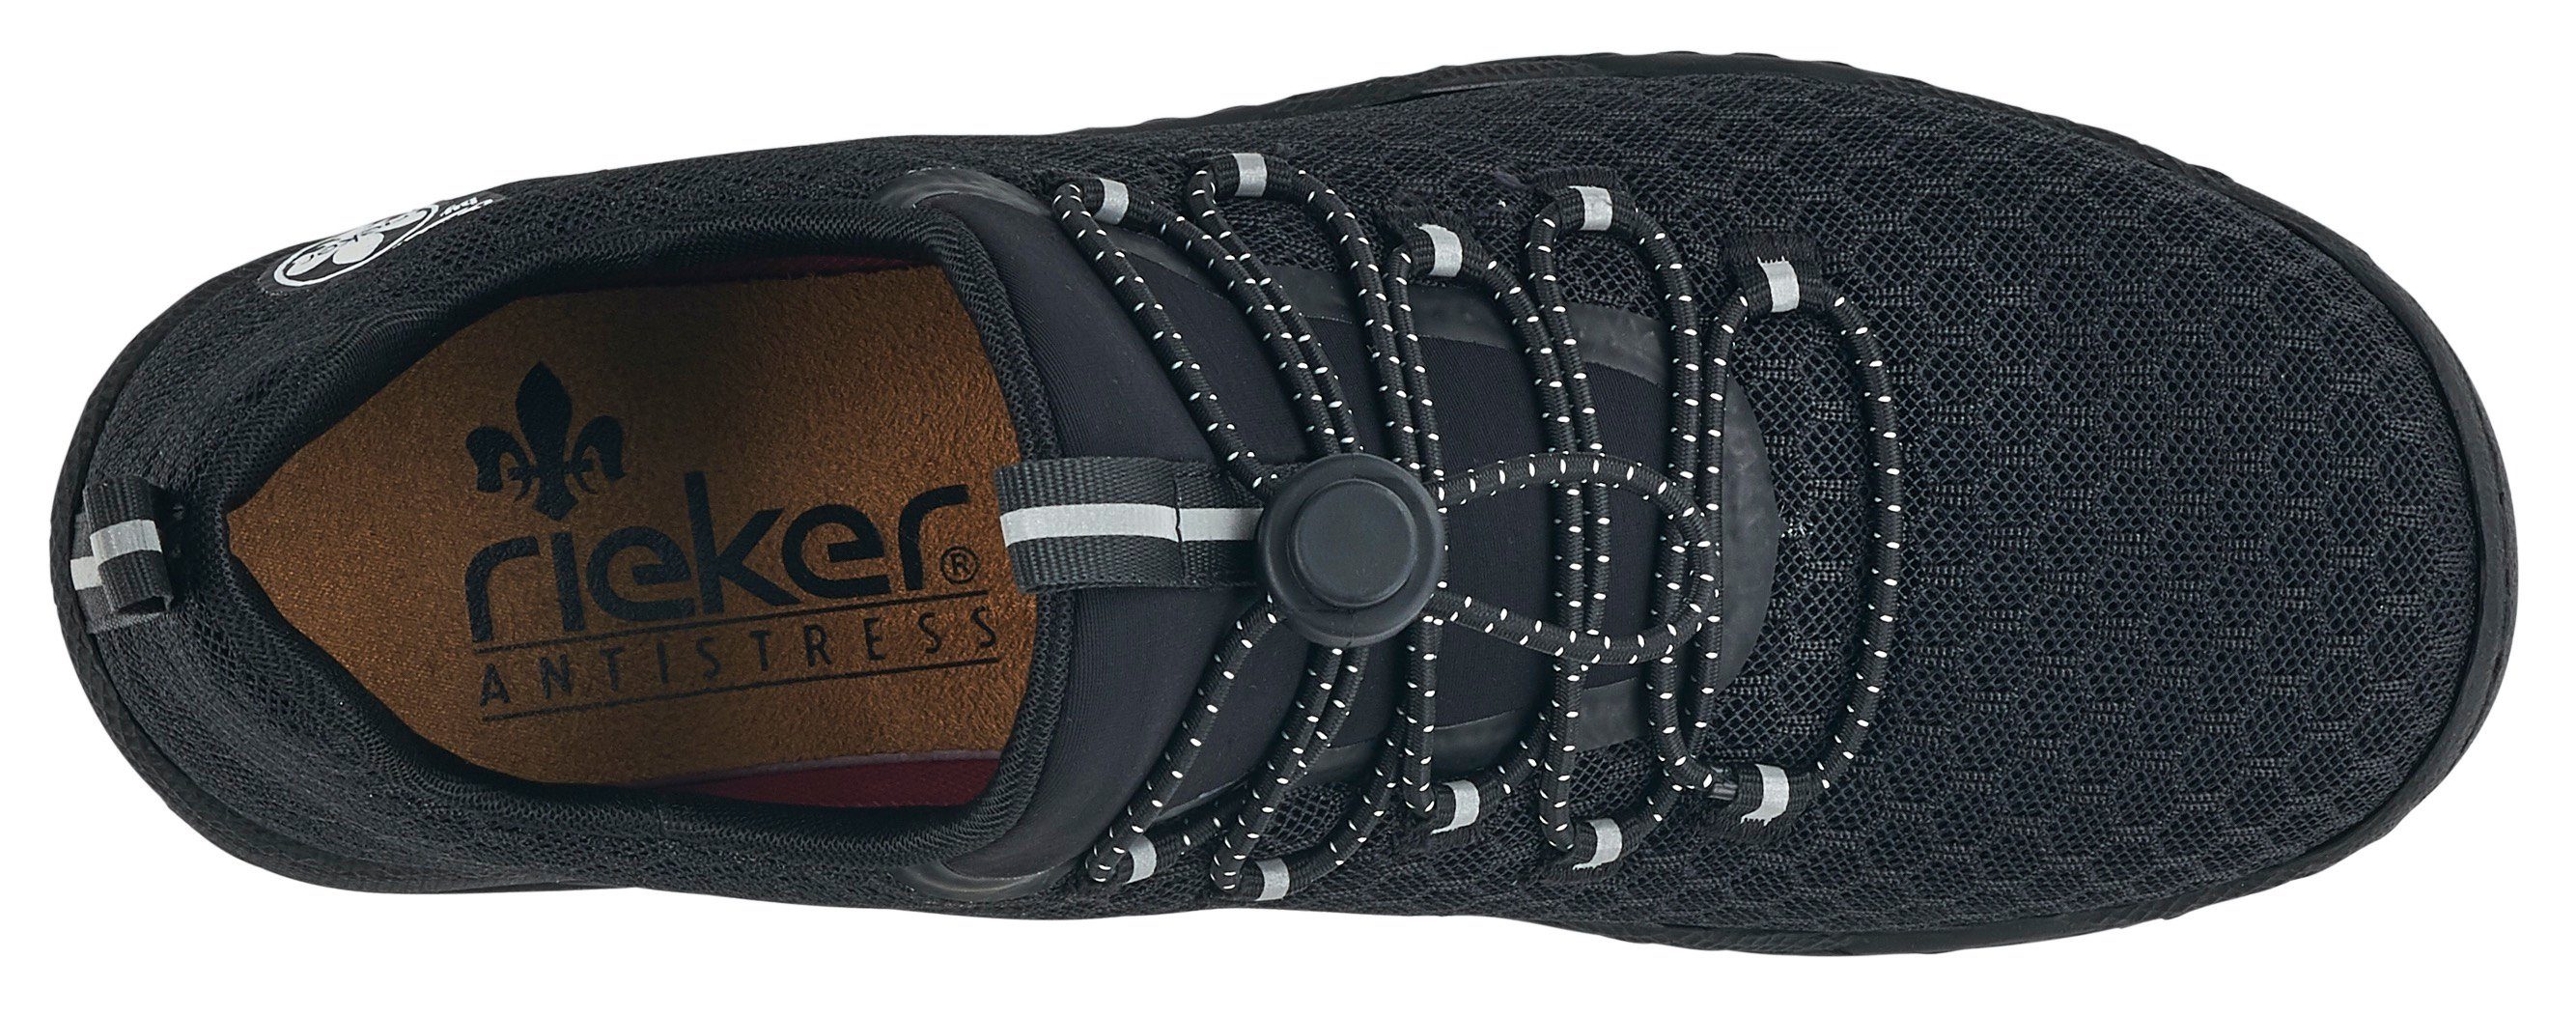 Schnellverschluss Rieker Sneaker mit praktischem Slip-On